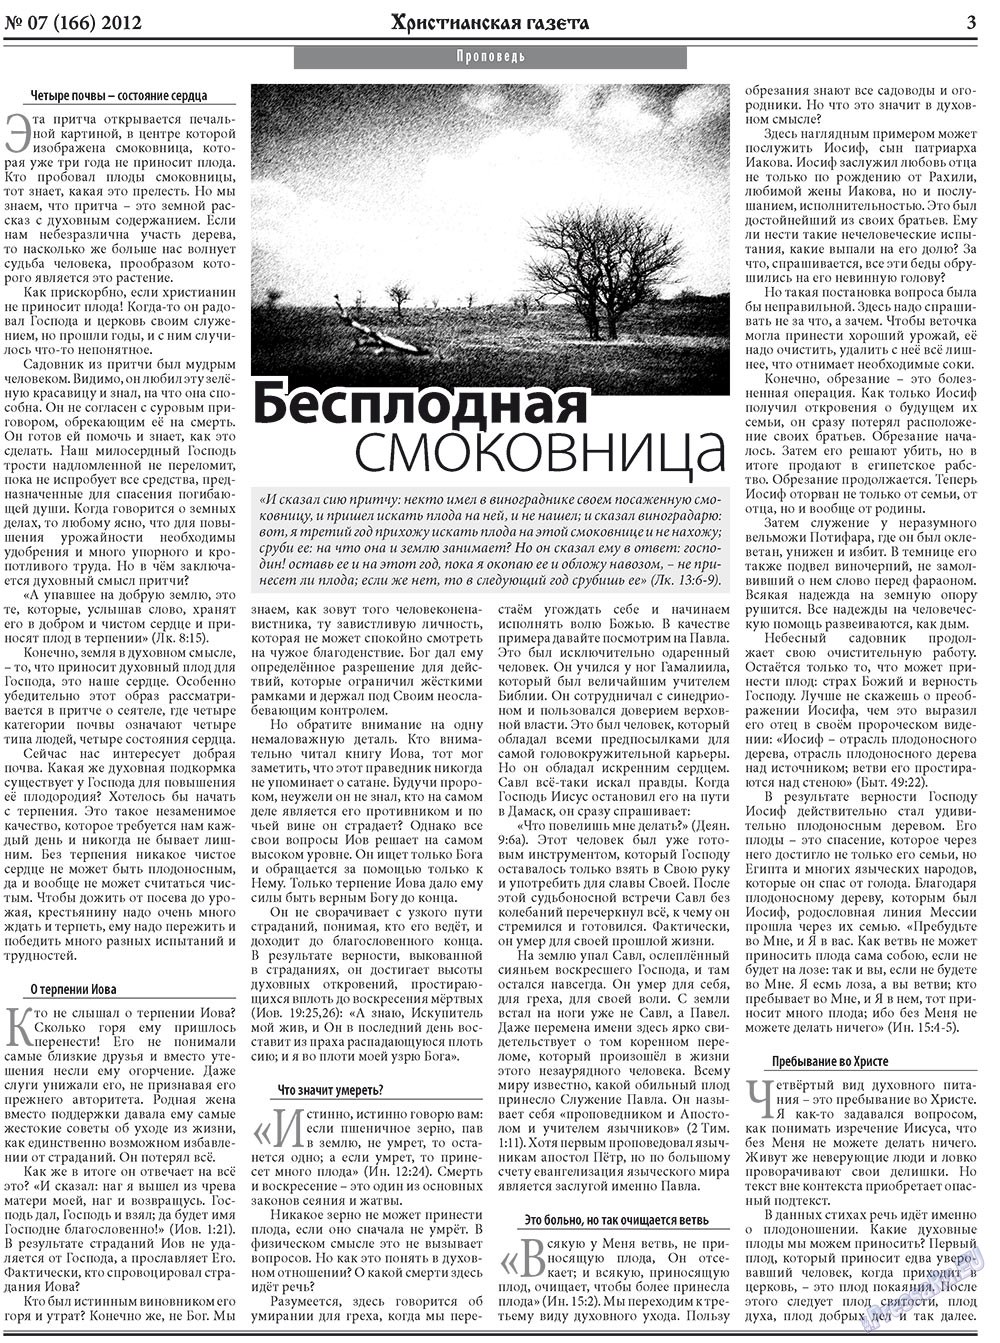 Христианская газета (газета). 2012 год, номер 7, стр. 3